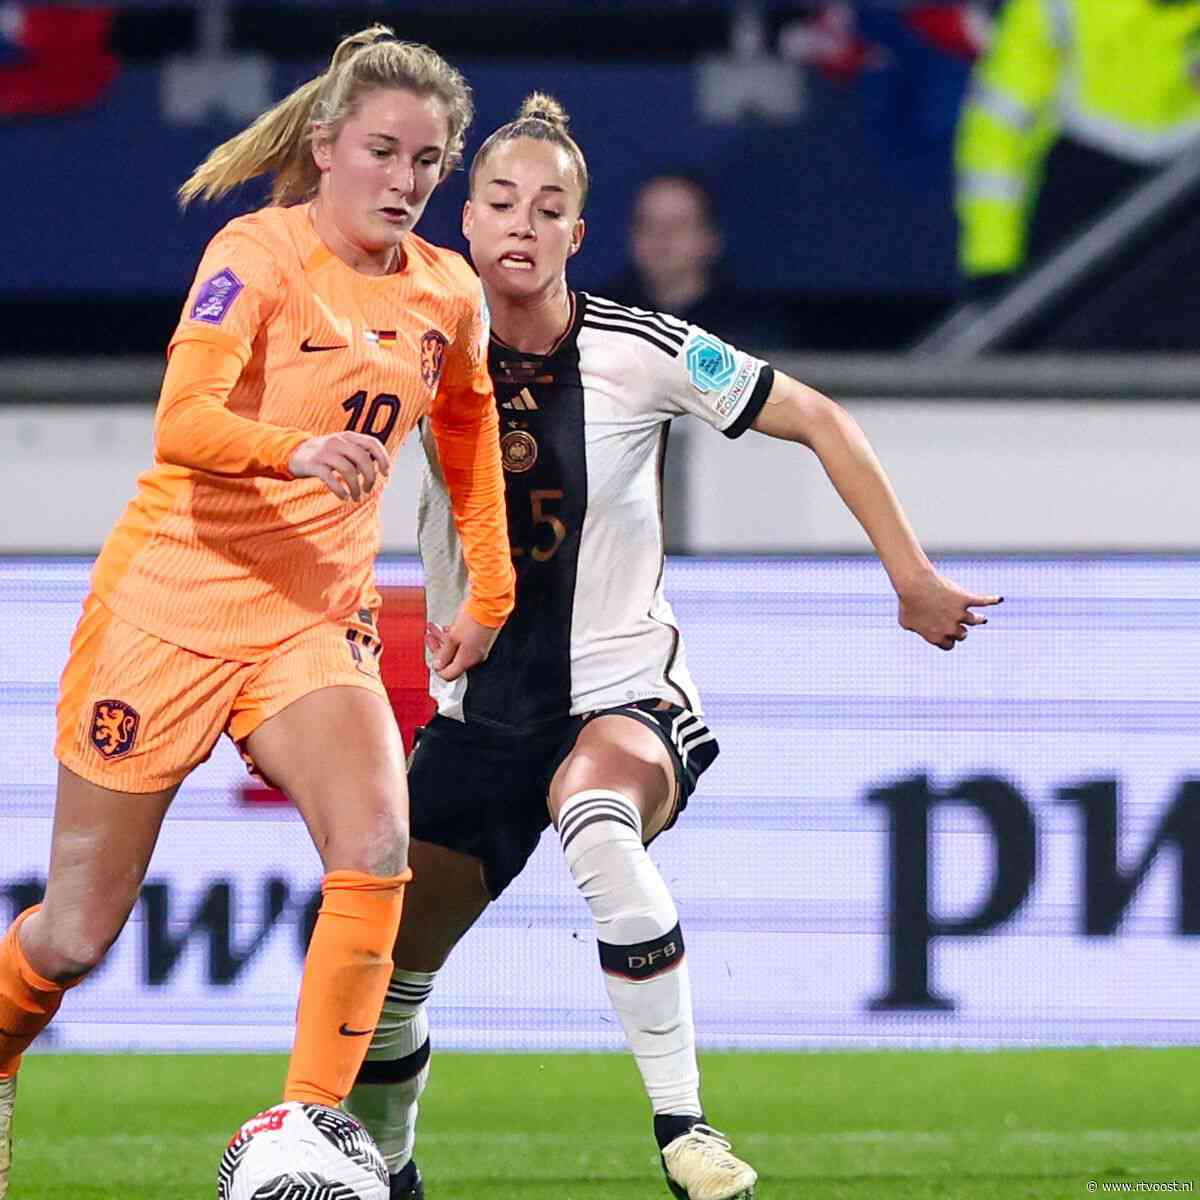 Vijf Twente-speelsters in selectie Oranjevrouwen voor EK-kwalificatie